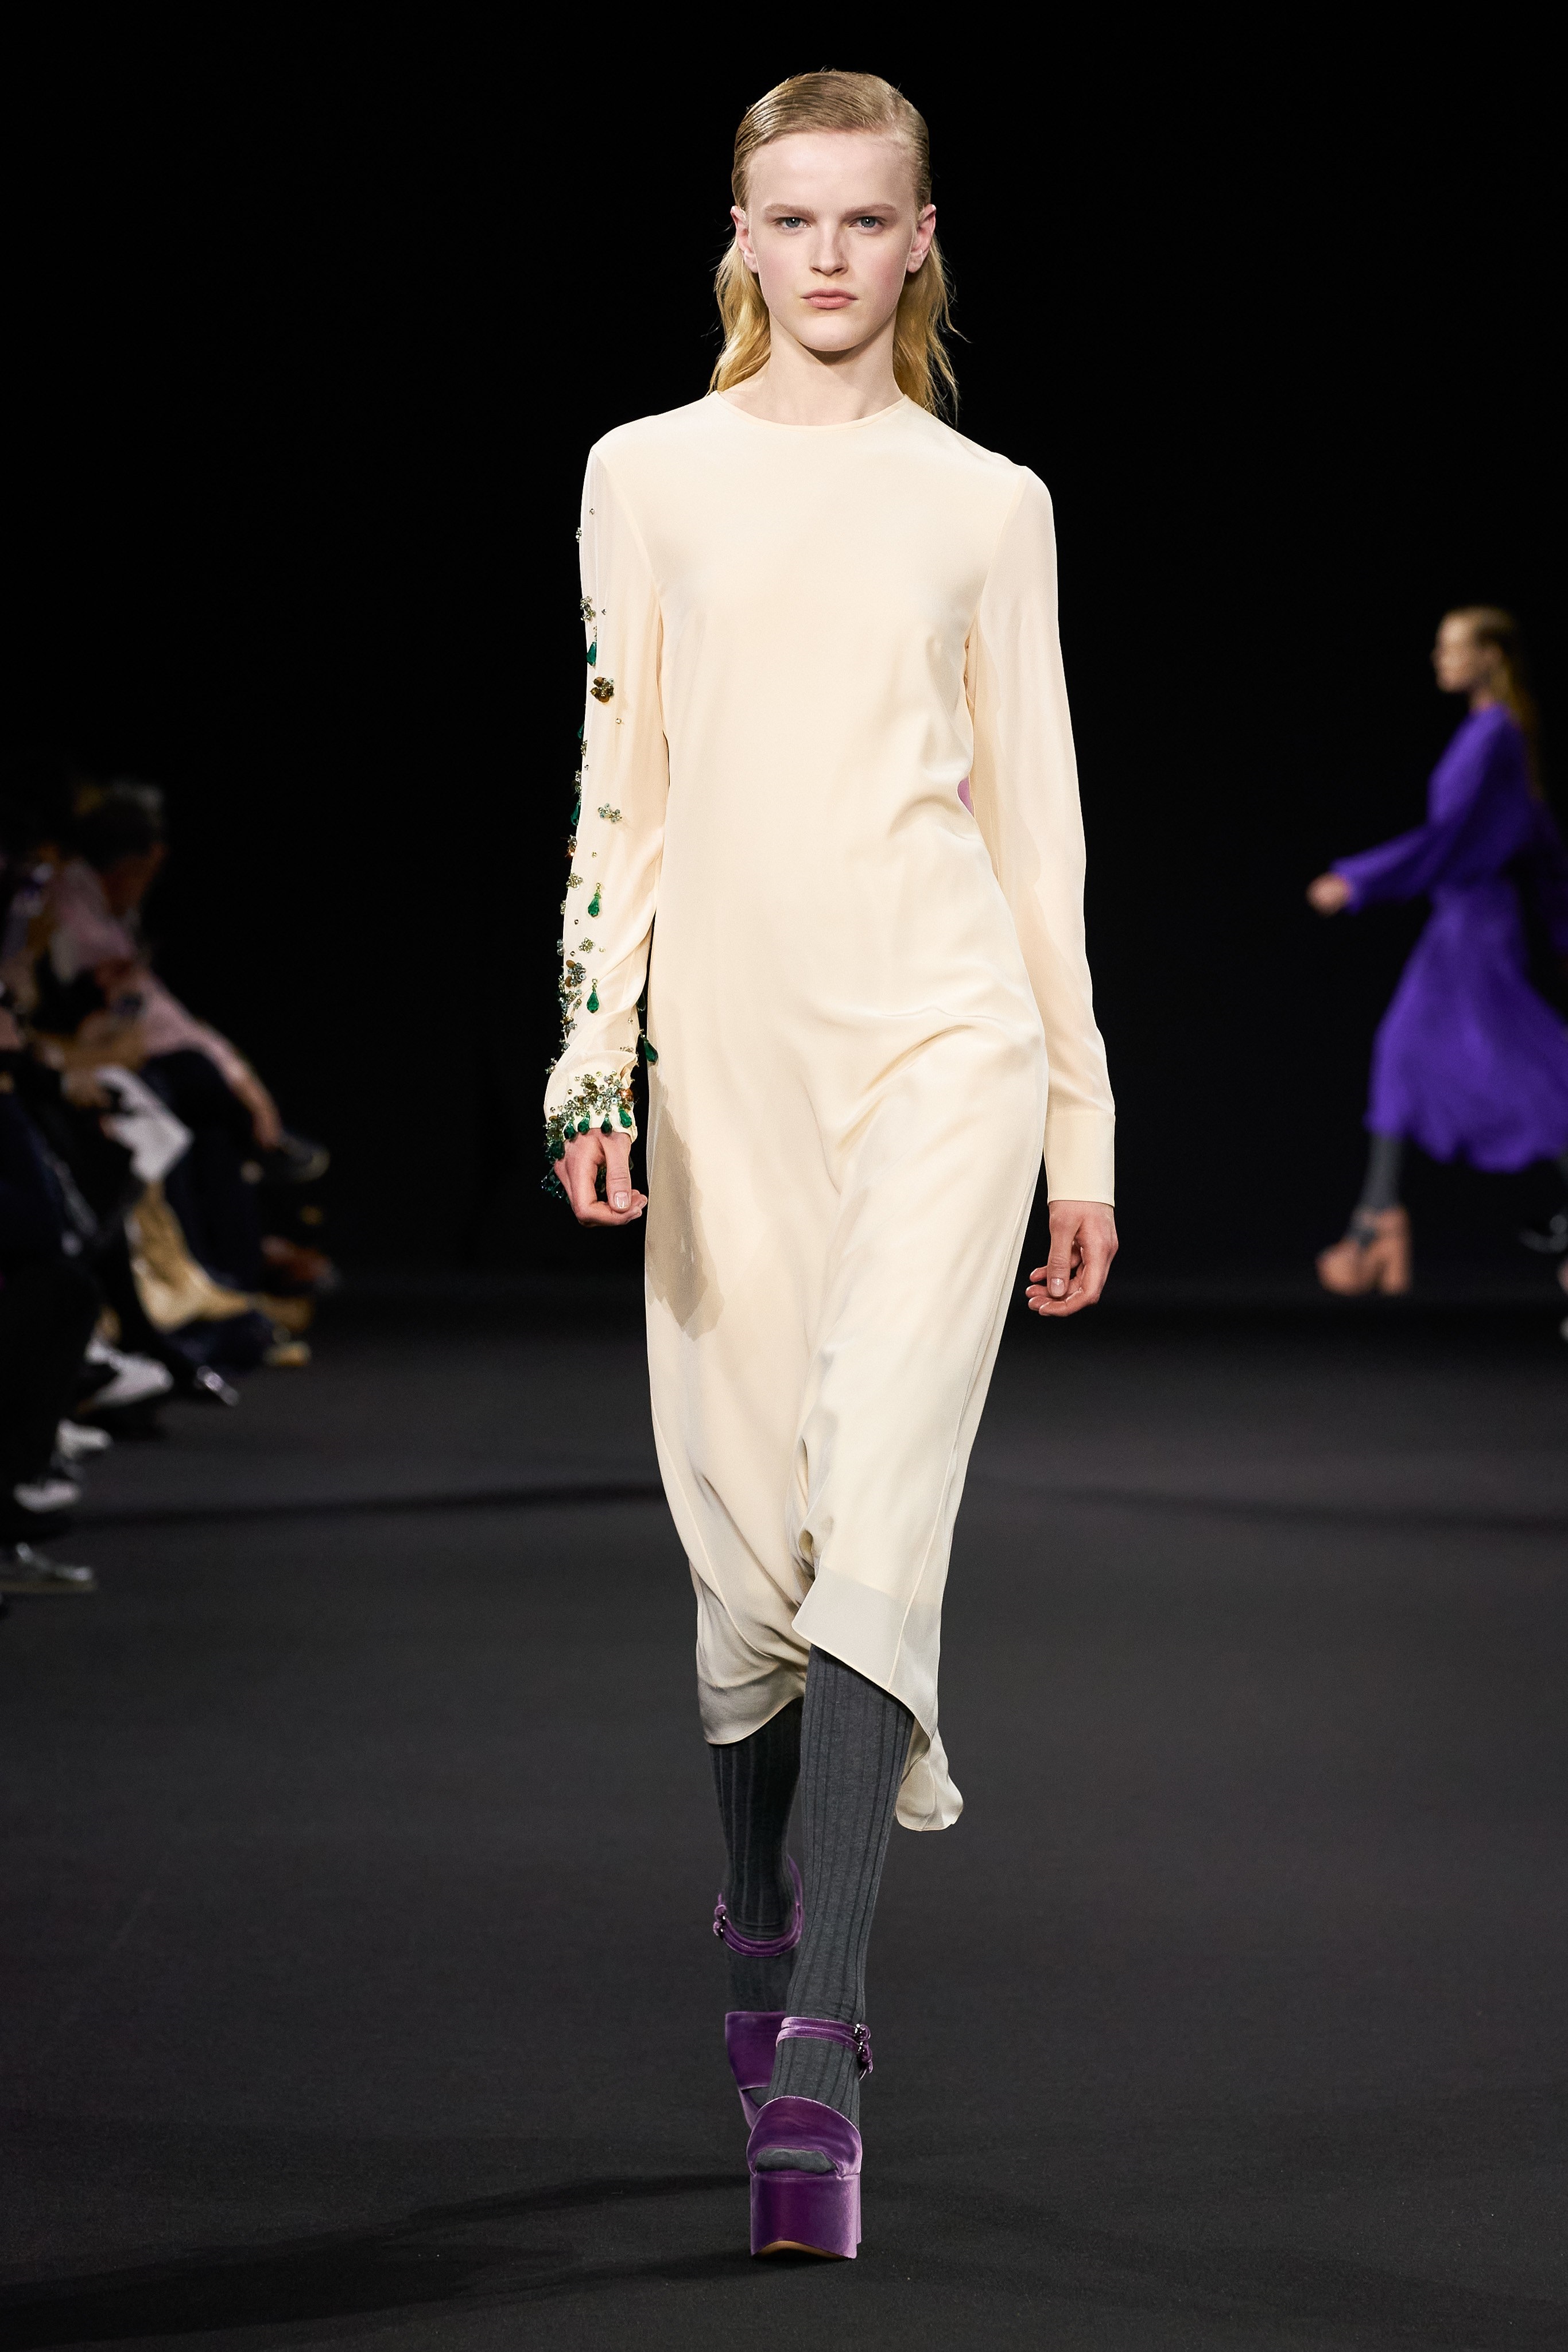 Thời trang nữ quyền của Dior tại Paris Fashion Week - 13